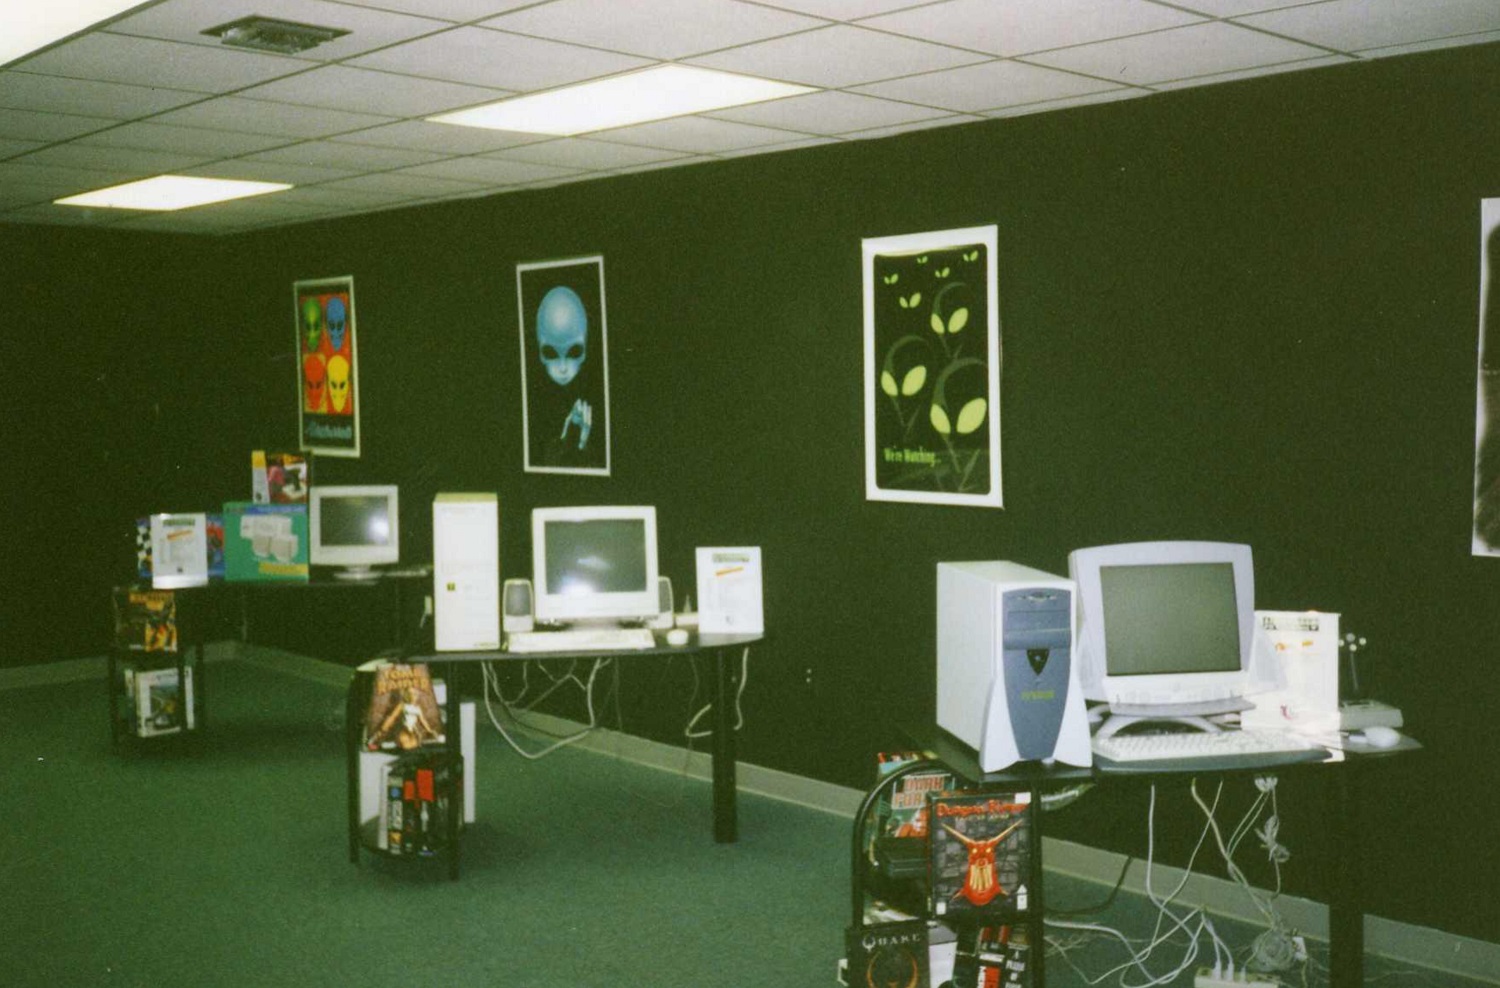 A showroom with Alienware desktops.